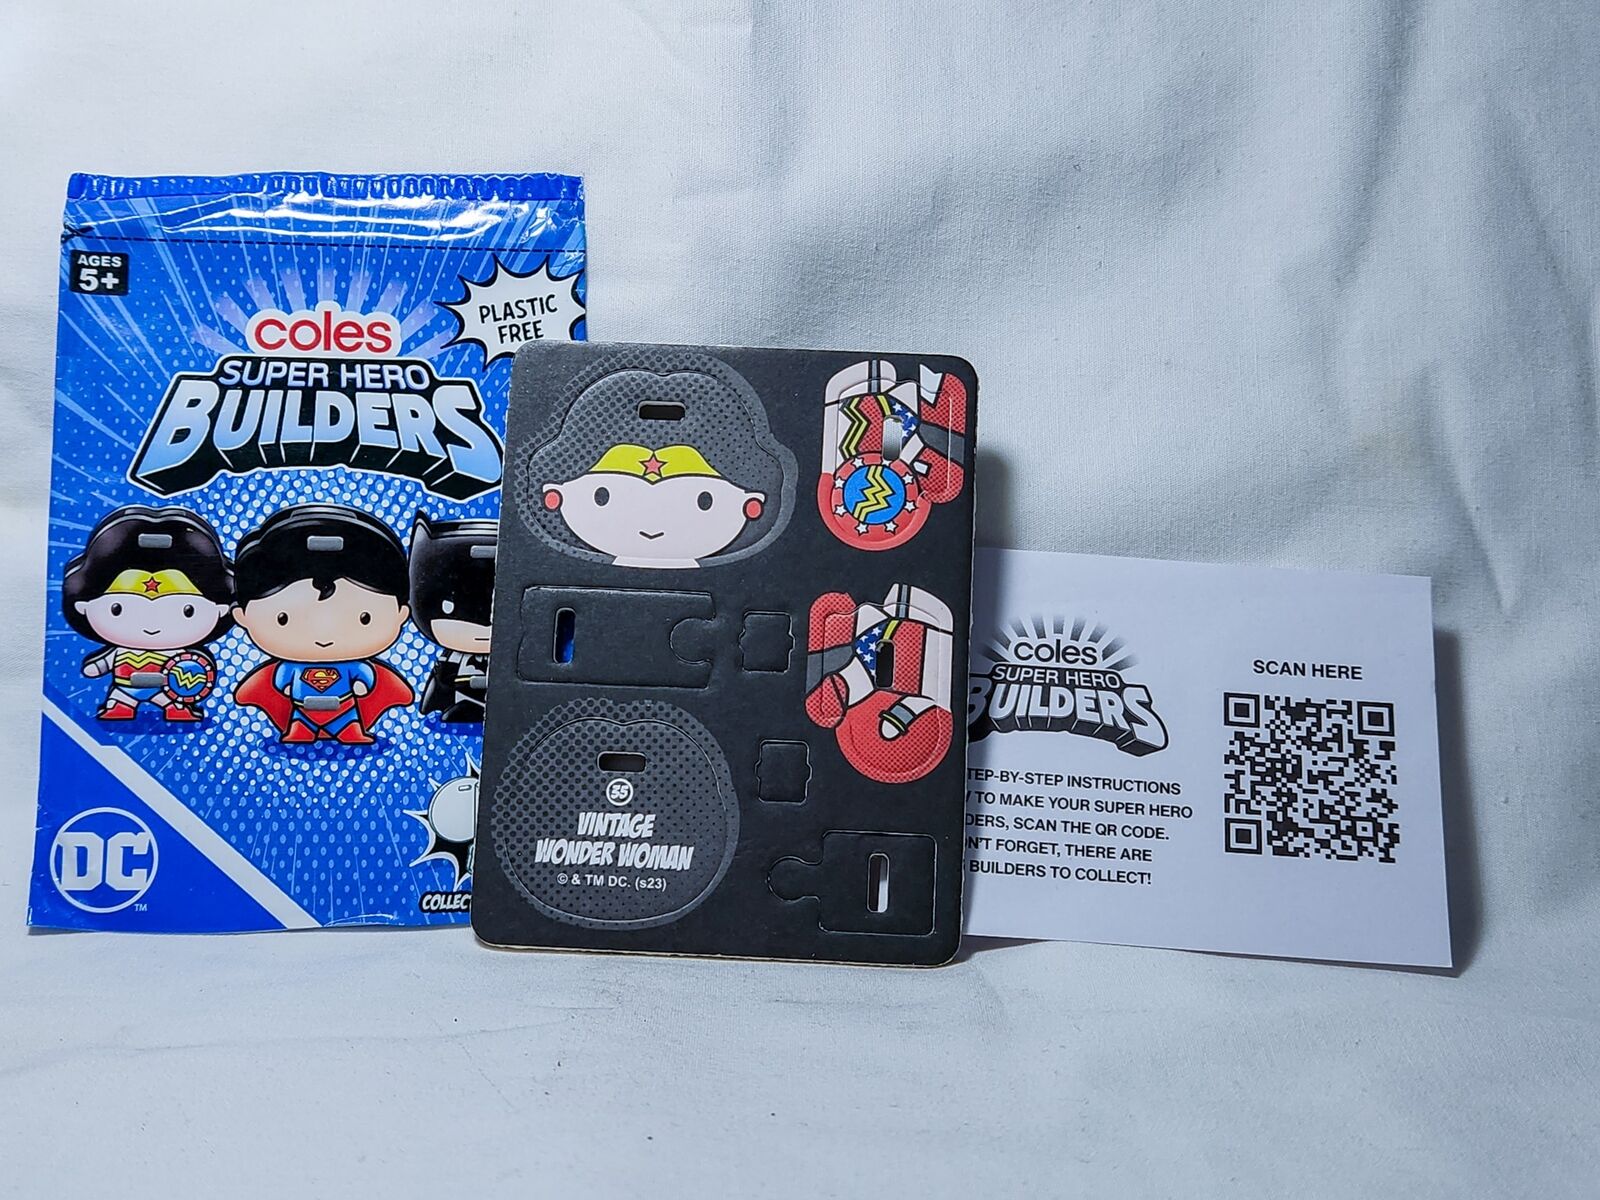 Coles DC Super Hero Builders Collectible Minifigure Card: VINTAGE WONDER WOMAN